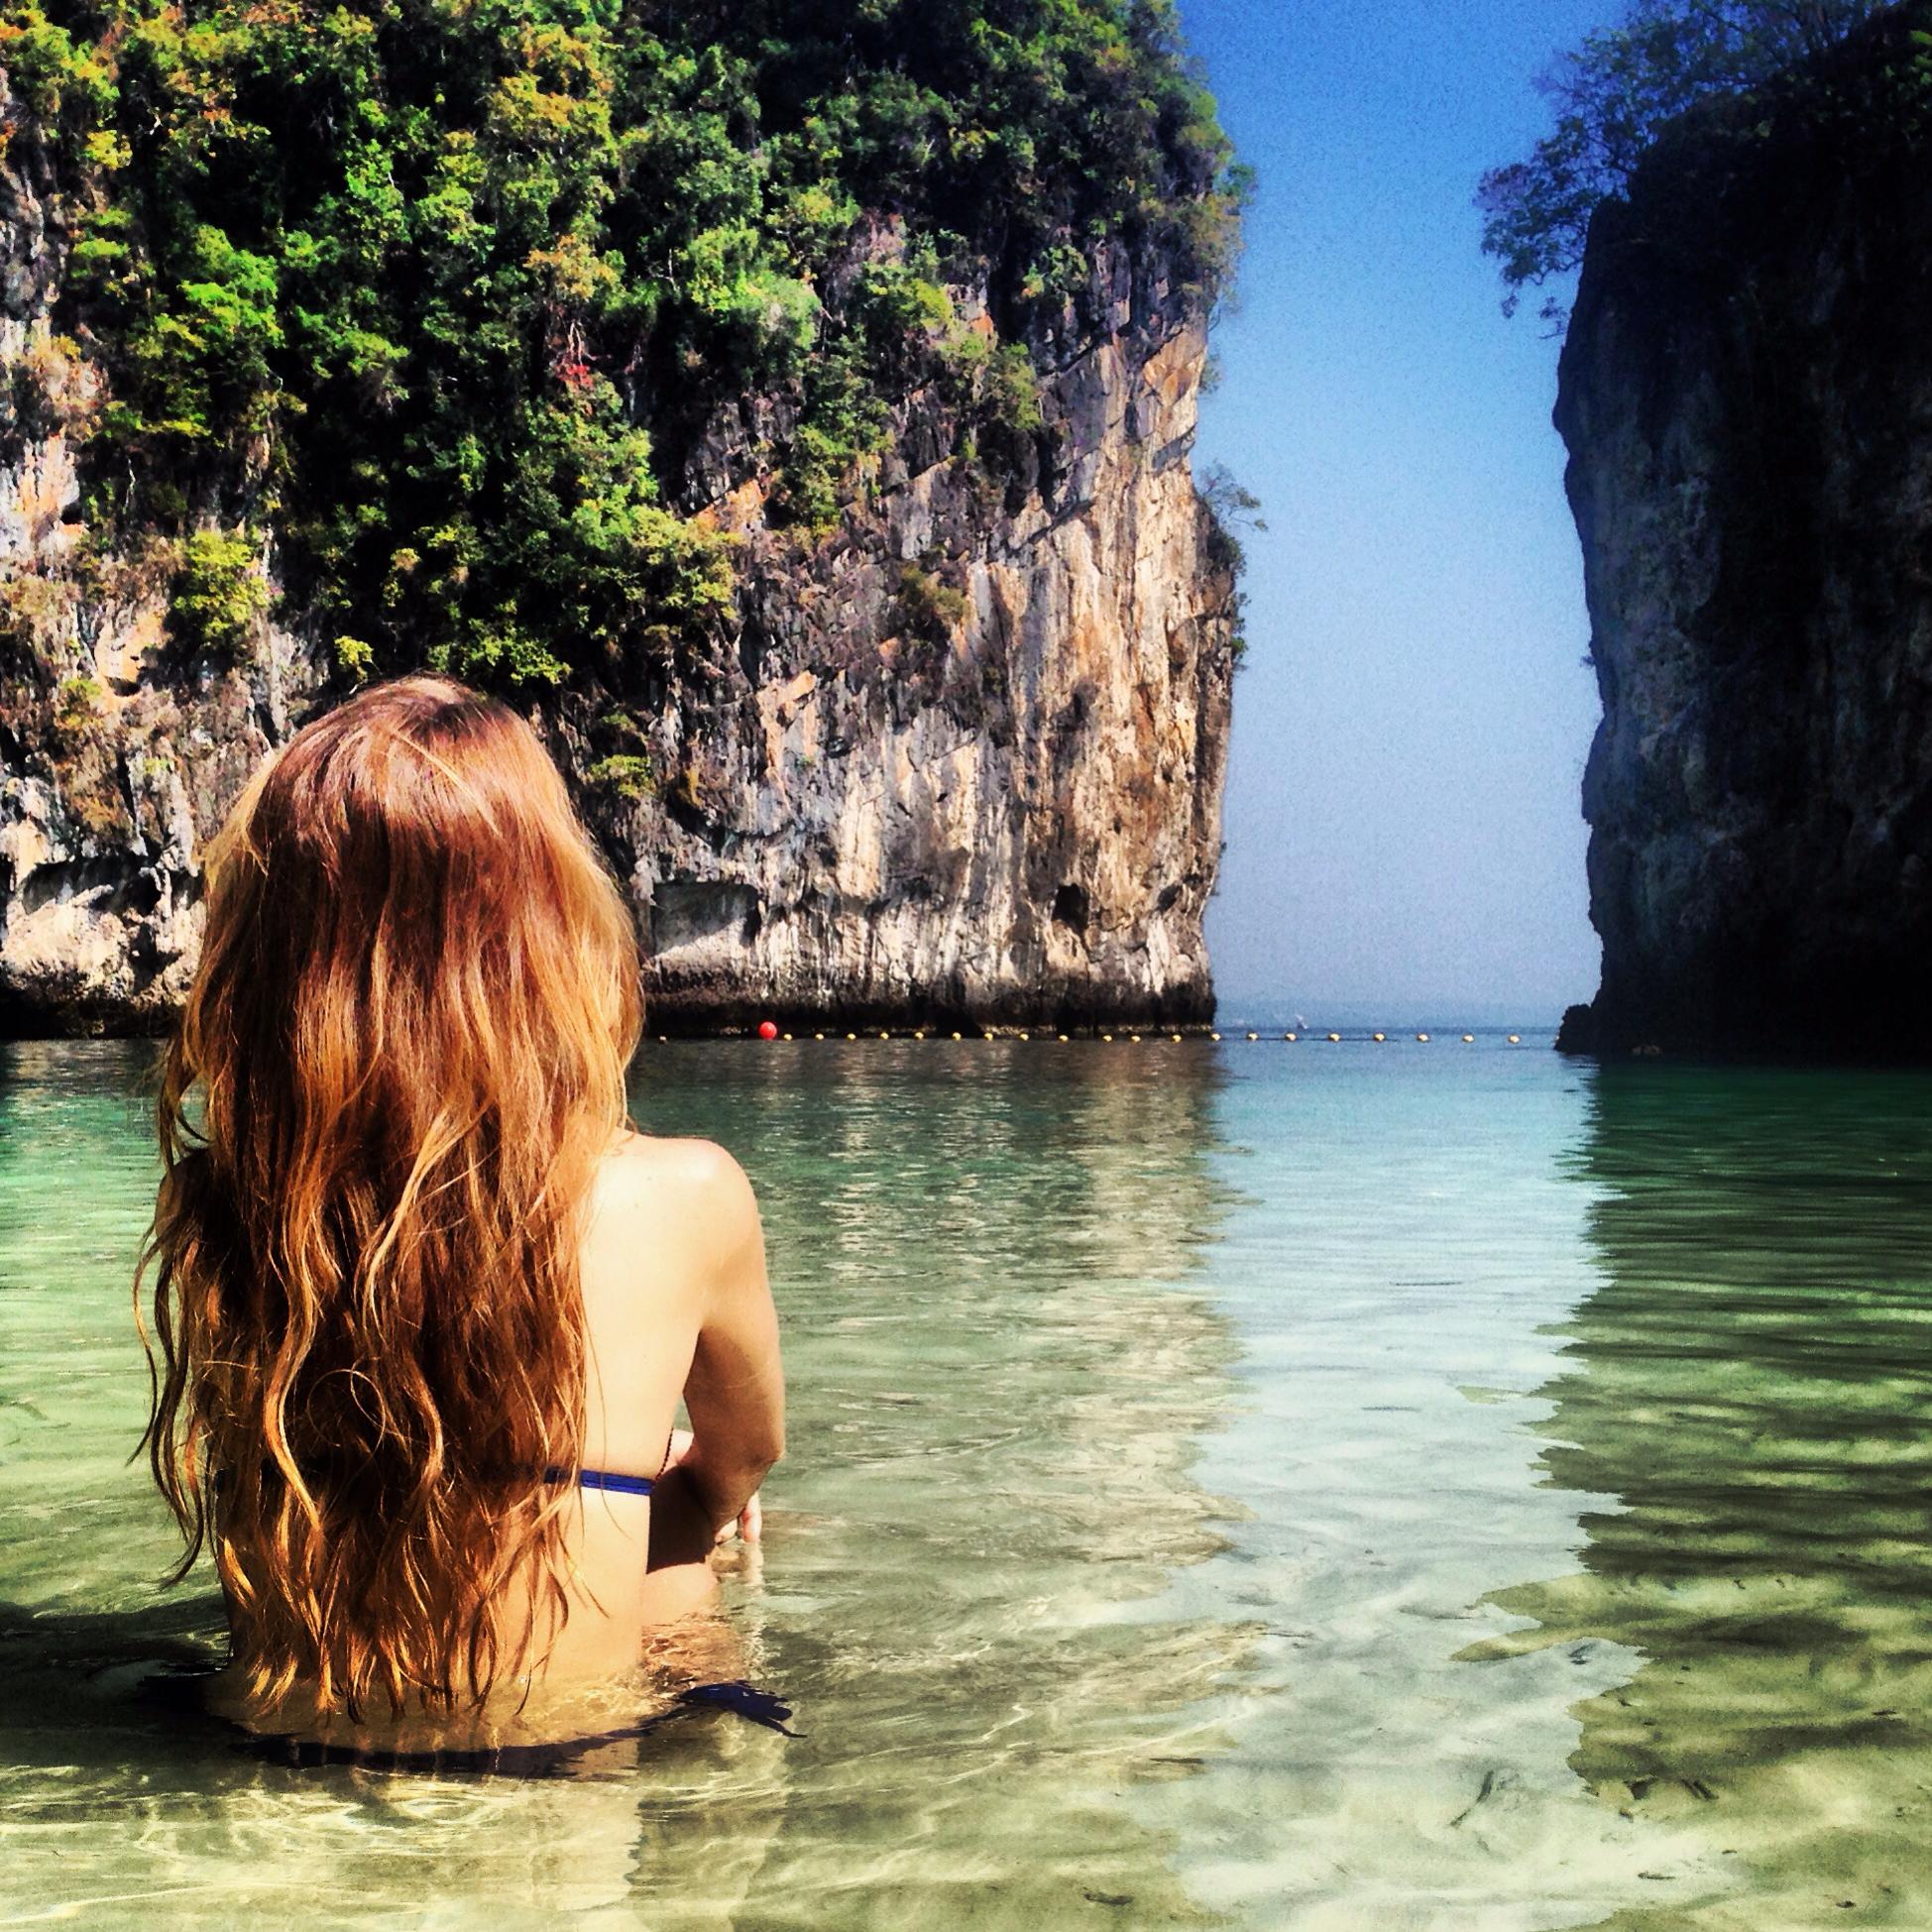 Скачать Картинки Девушка На Пляже В Таиланде